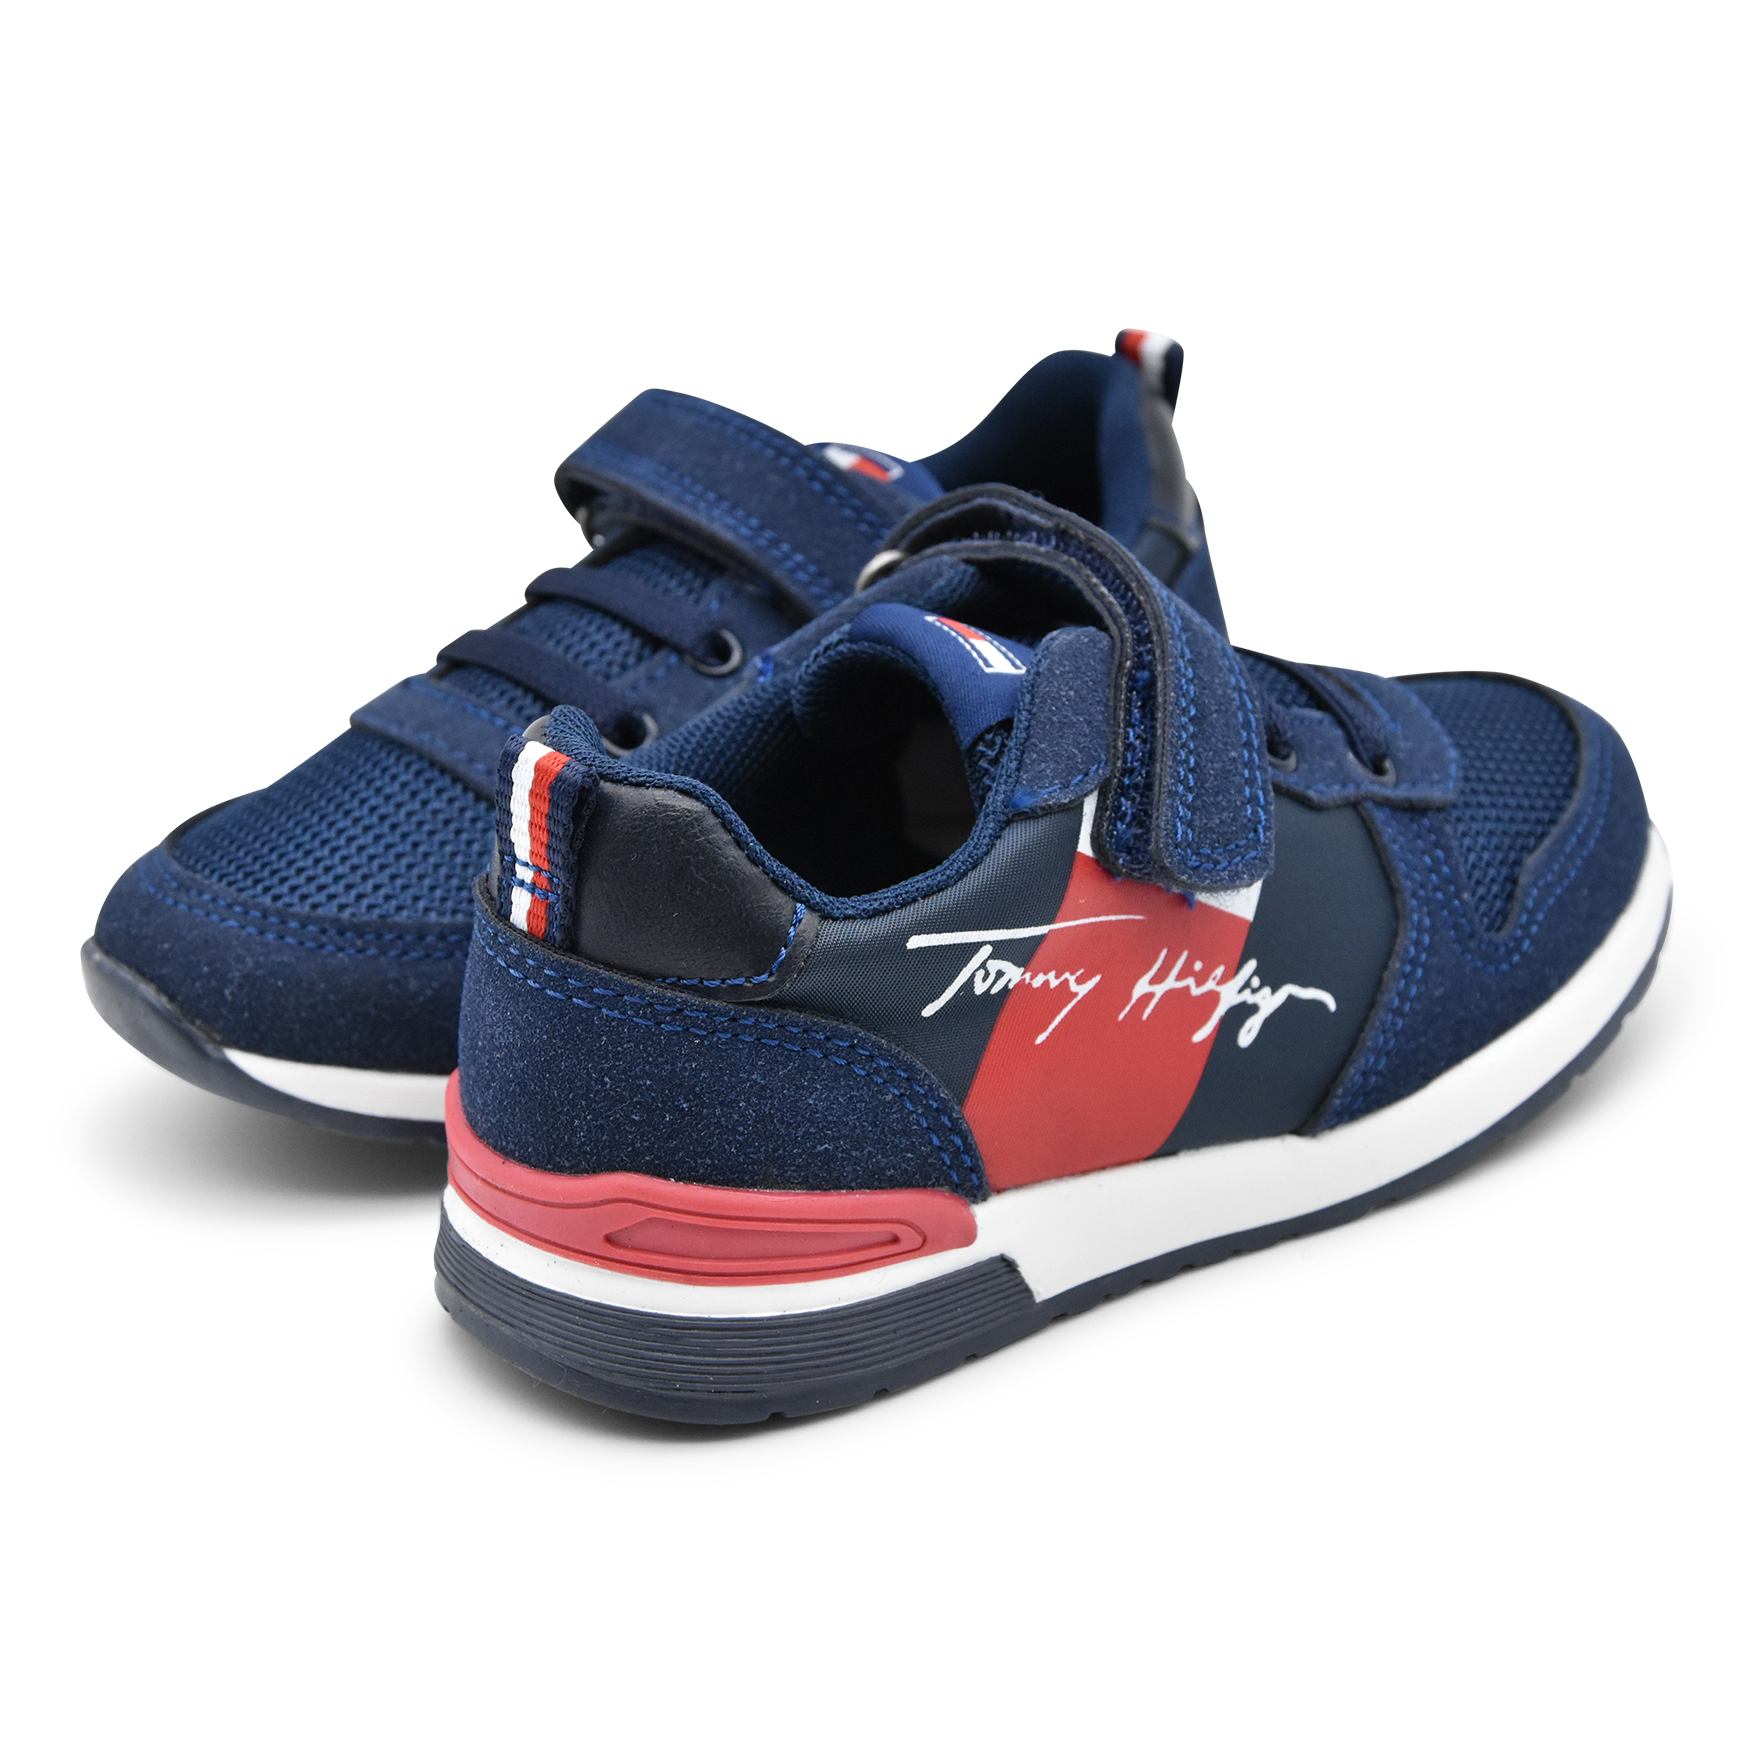 Tommy Hilfiger, sneakers, lacci elasticizzati, velcro, rosso, blu, retro